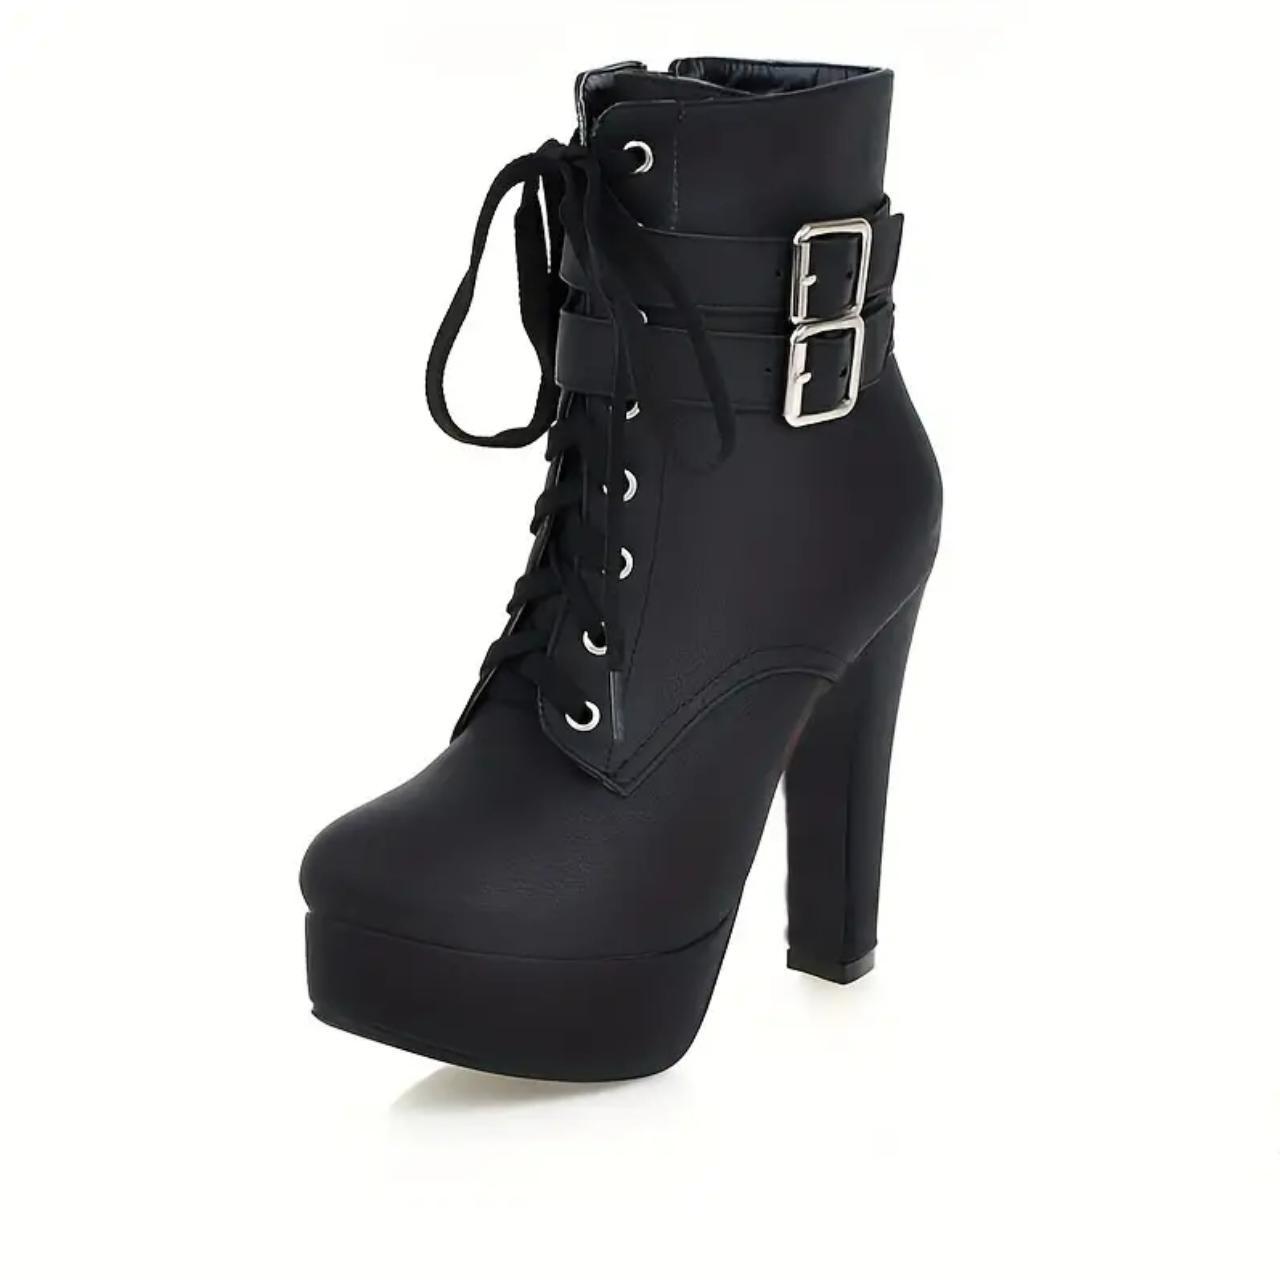 Women's Platform Heeled Boots, Fashion Solid Color... - Depop